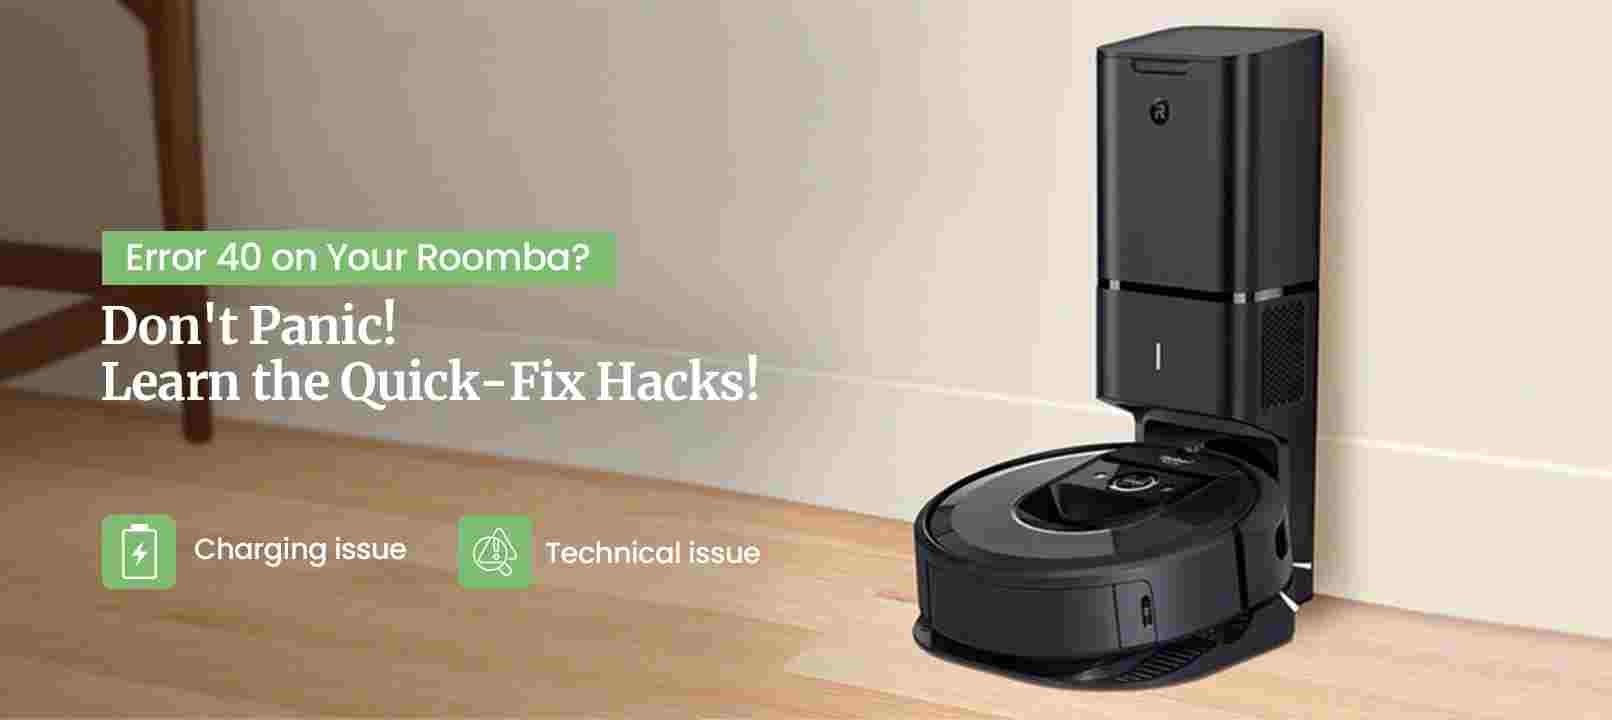 How to Fix Roomba Error 40